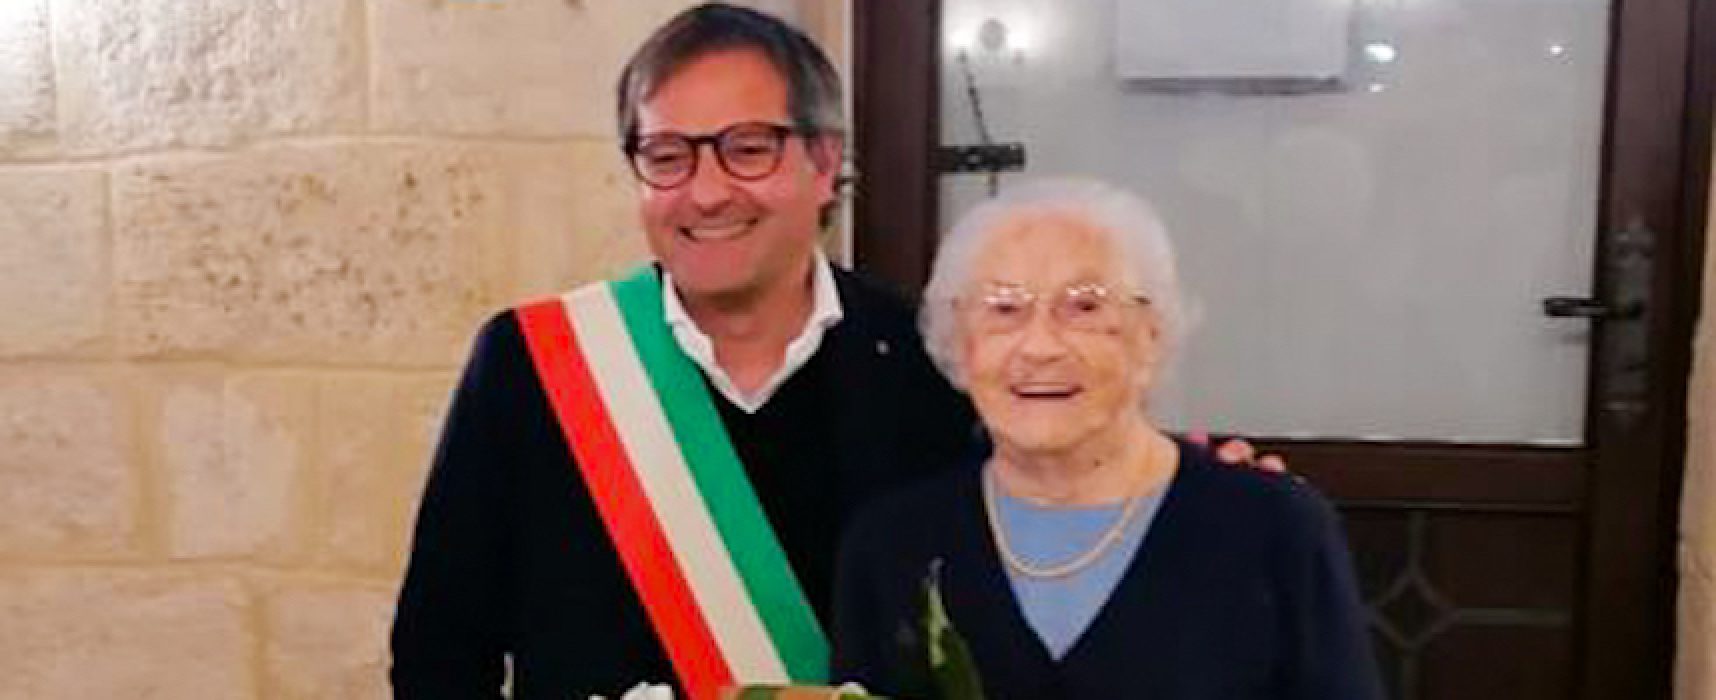 La signora Maria festeggia 100 anni: gli auguri del sindaco Angarano